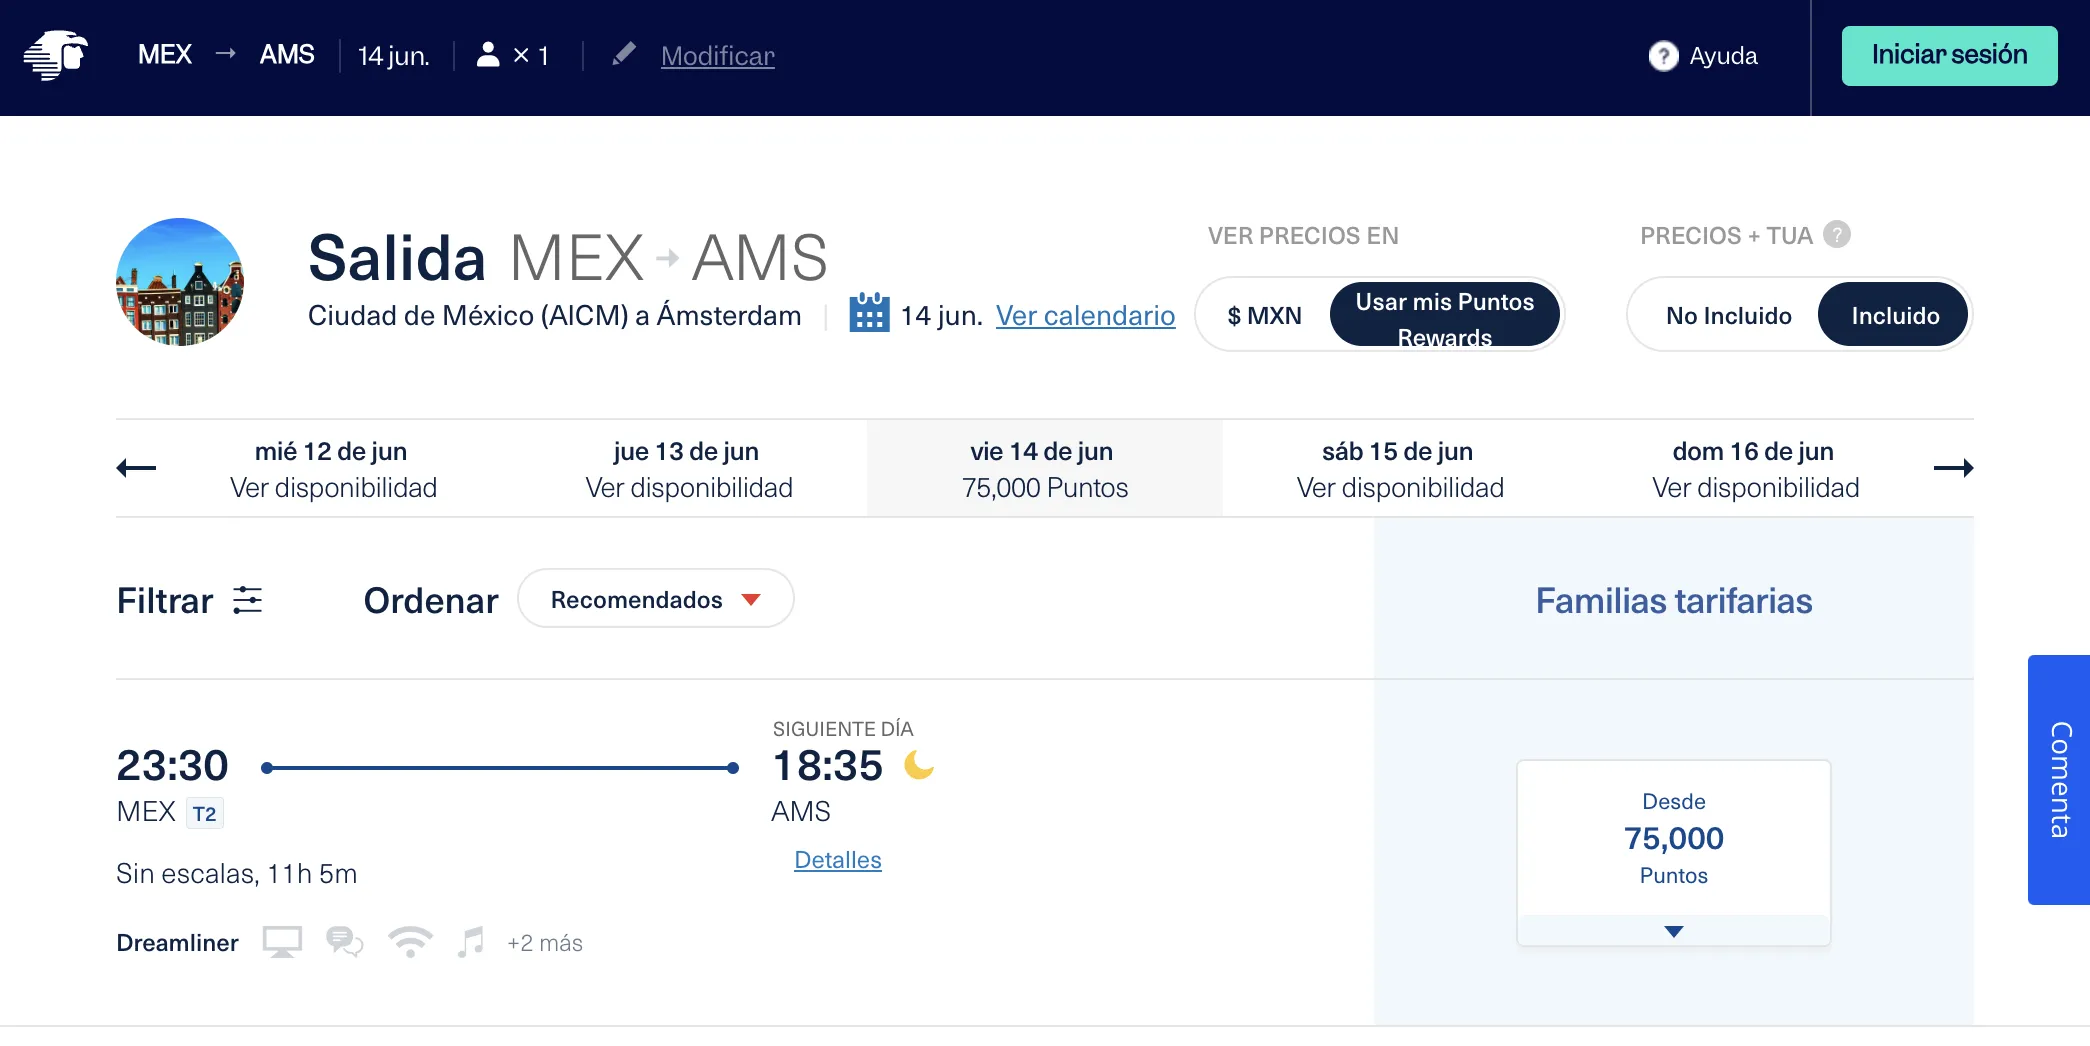 AwardFares redirects you to Aeromexico website to book Aeromexico Rewards awards.